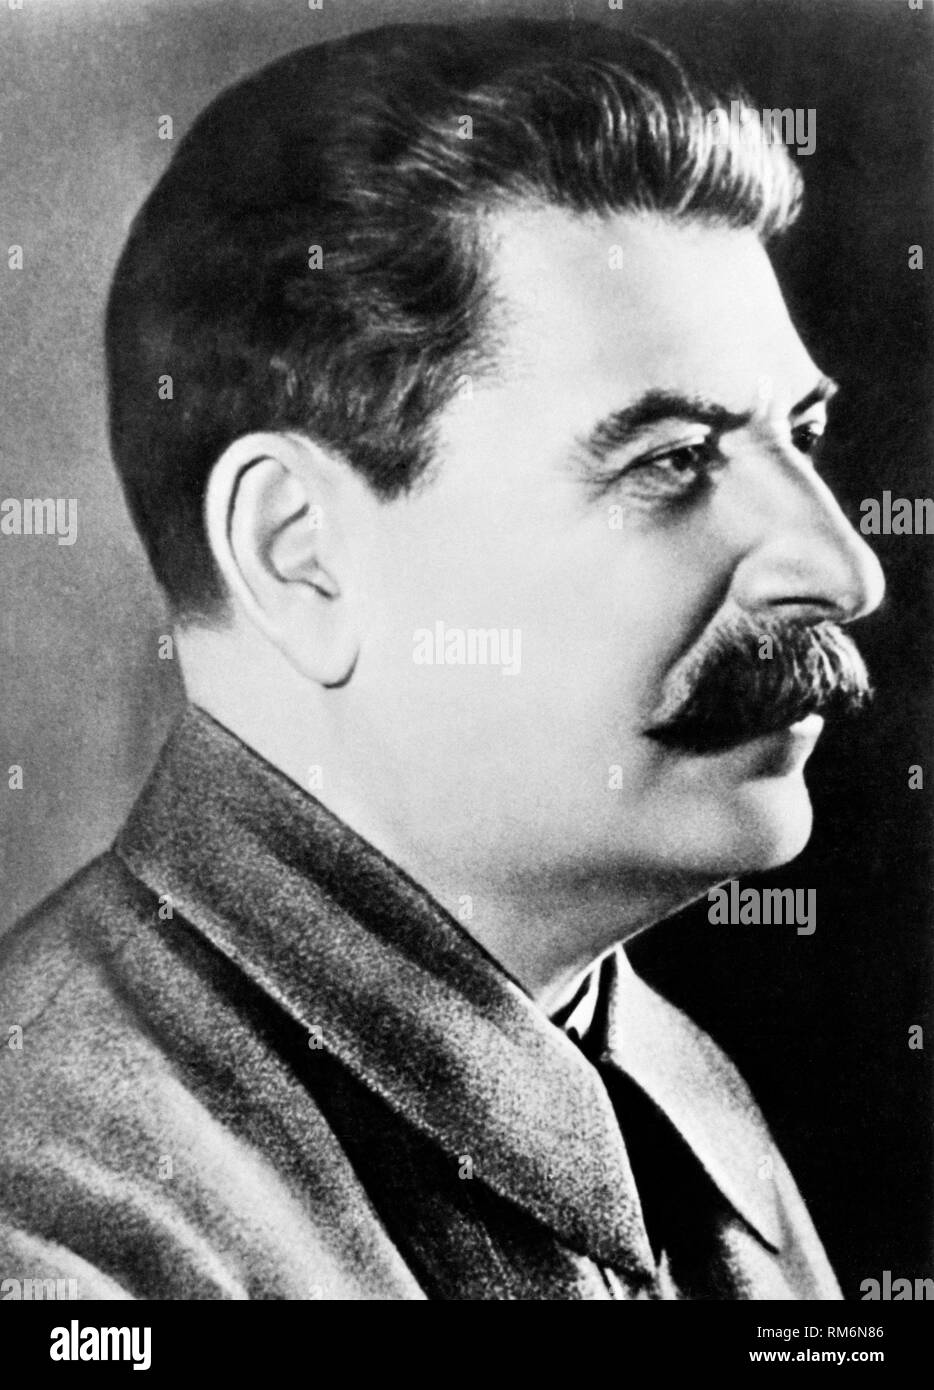 Joseph Vissarionovich Stalin politian sovietica e leader dell'URSS immagine aggiornata utilizzando il restauro digitale e tecniche di ritocco Foto Stock